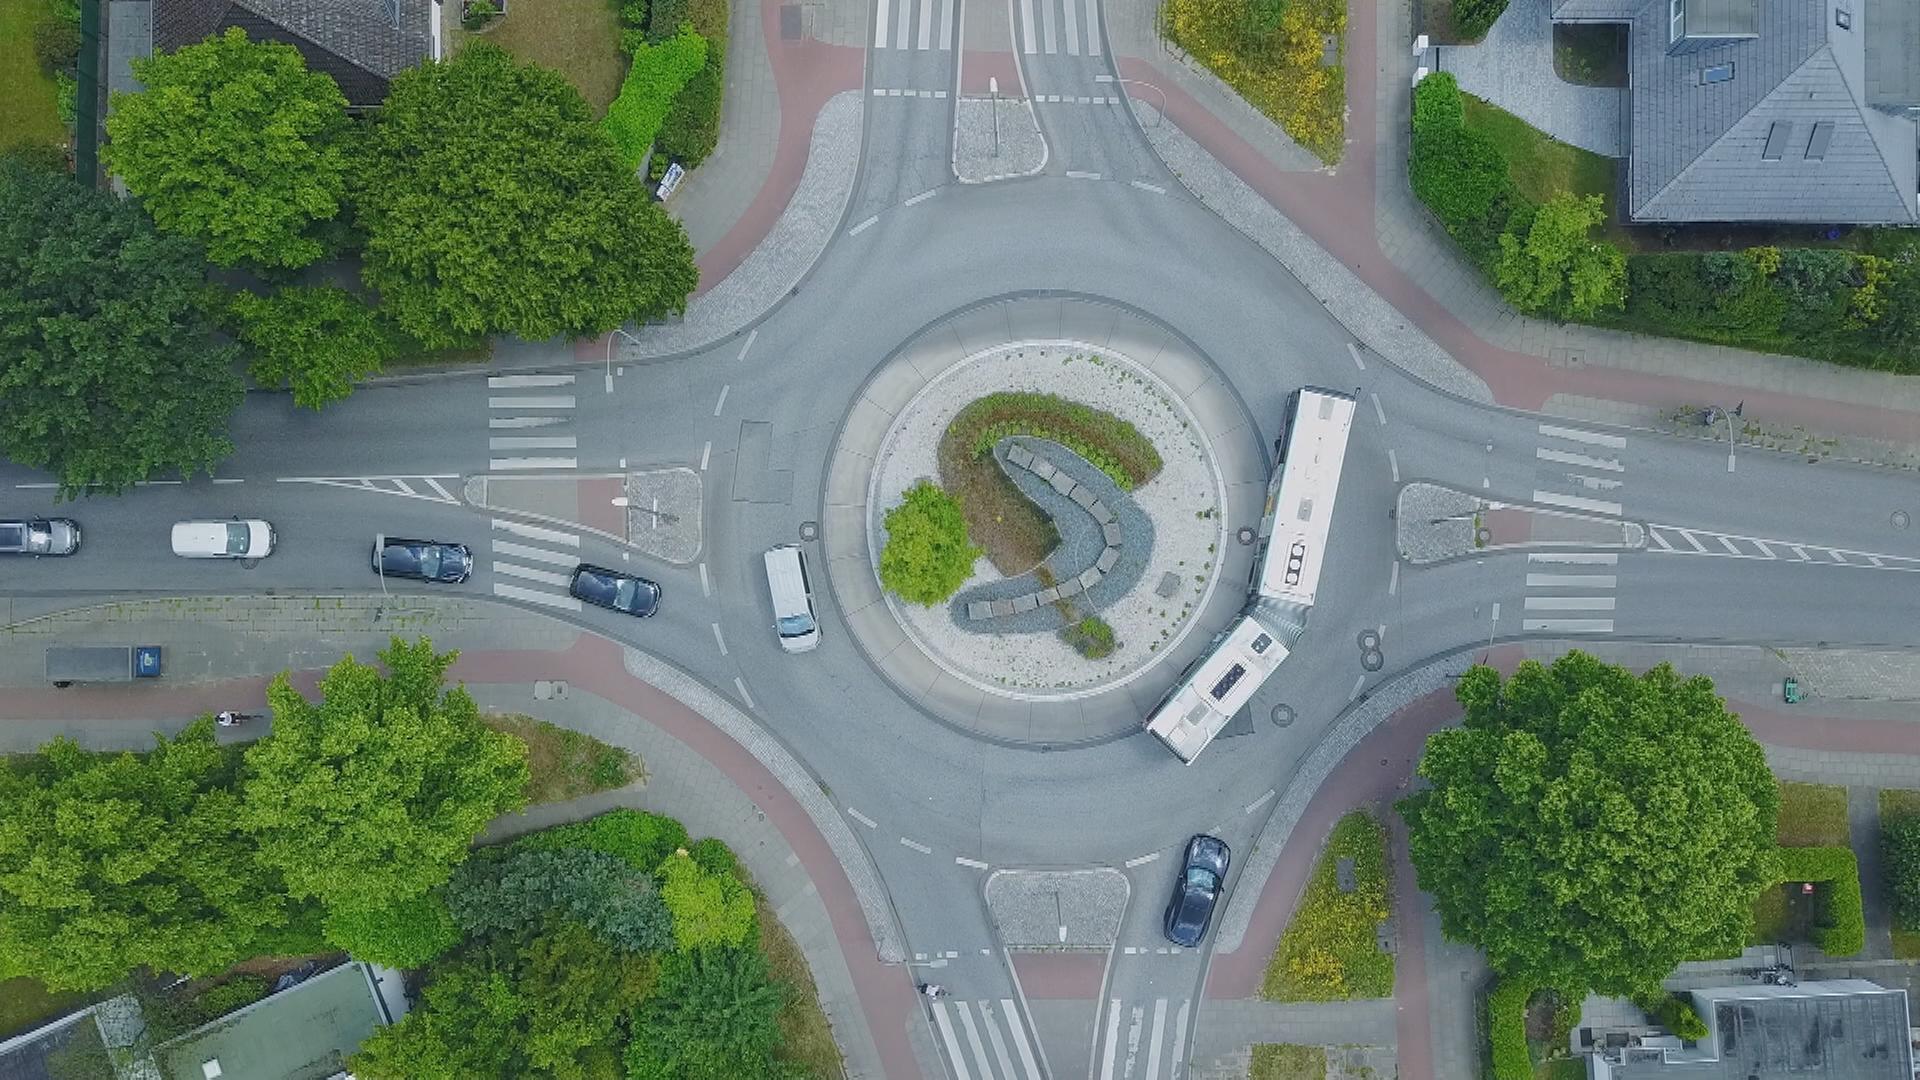 Welche Regeln gelten im Kreisverkehr?